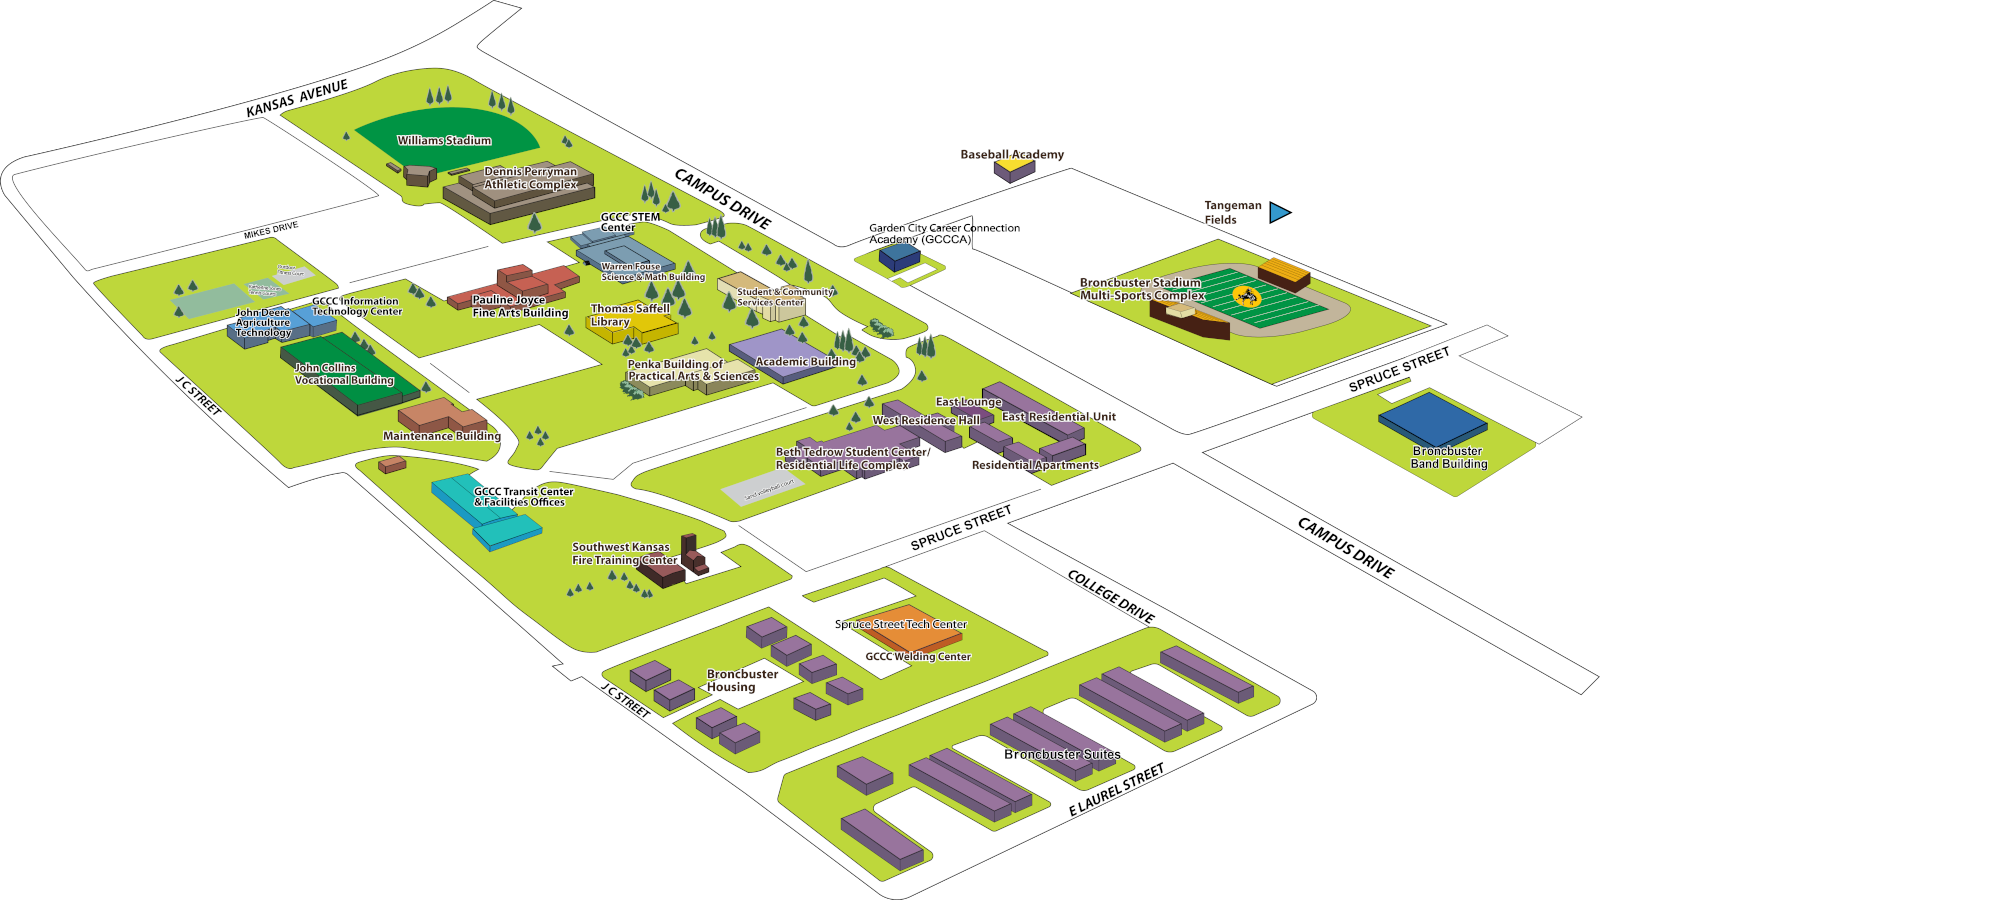 GCCC Campus Map